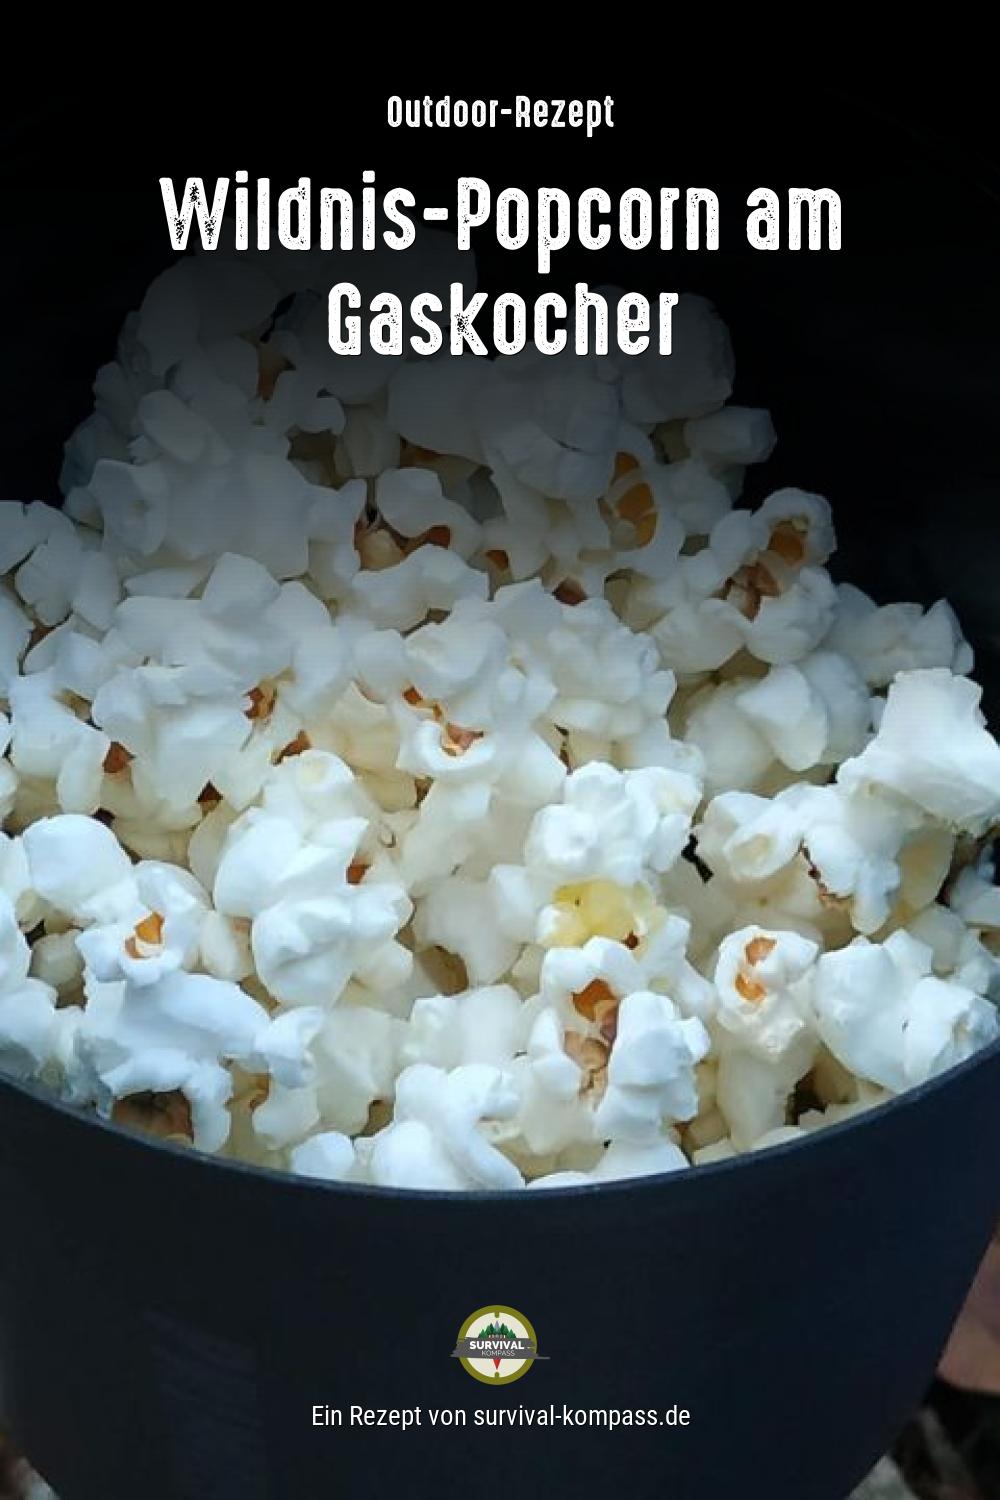 Wildnis-Popcorn am Gaskocher